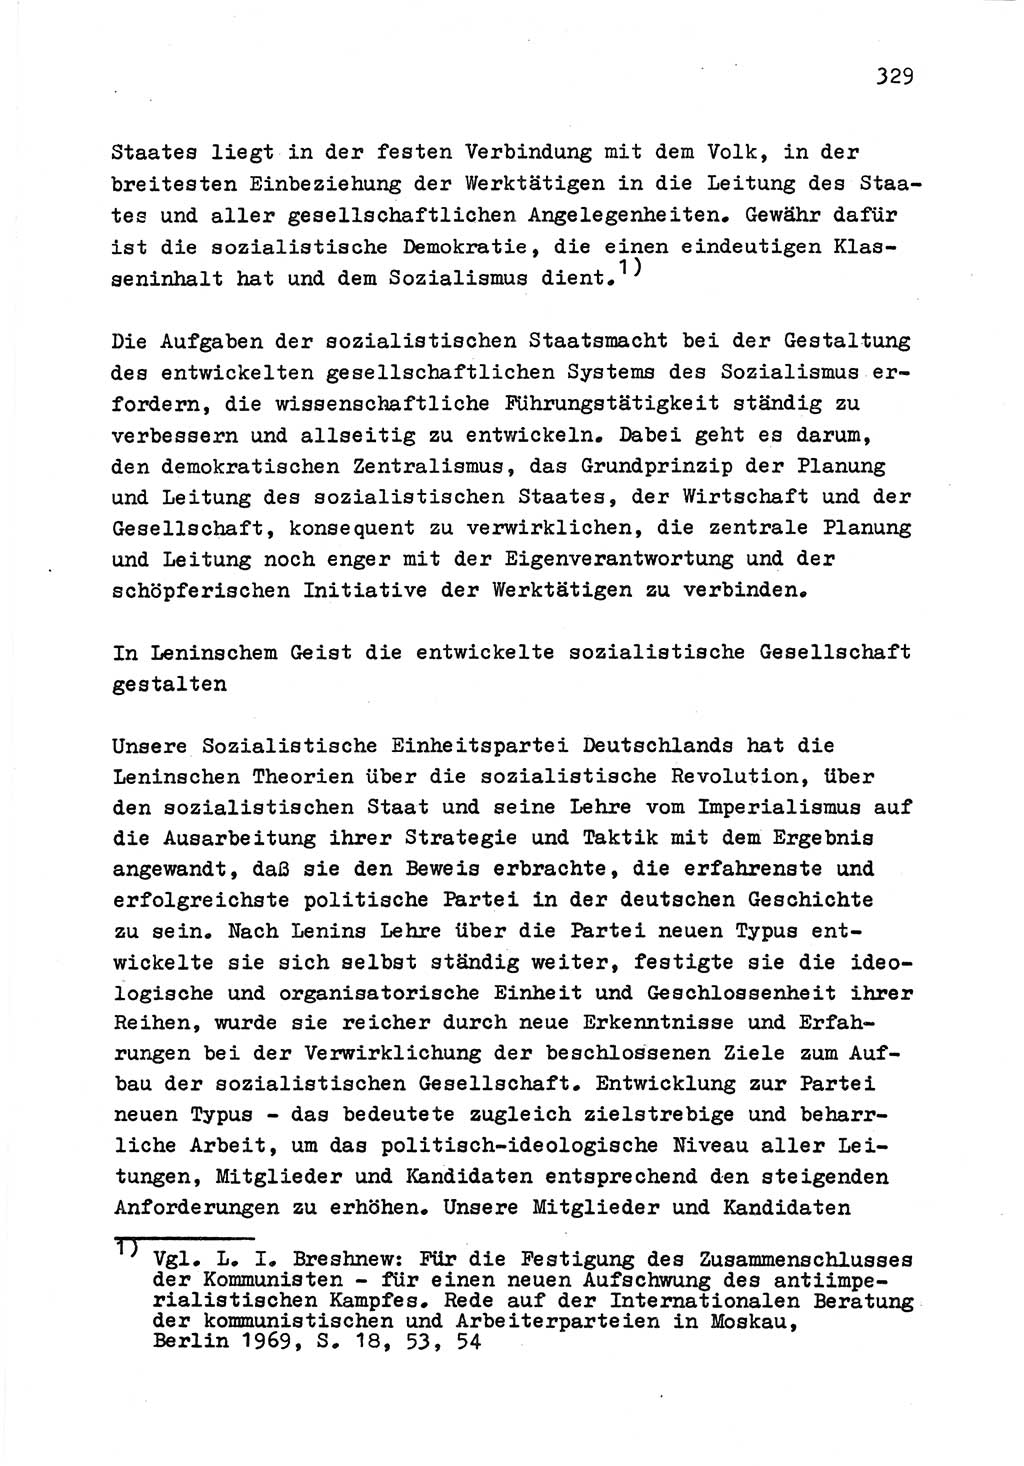 Zu Fragen der Parteiarbeit [Sozialistische Einheitspartei Deutschlands (SED) Deutsche Demokratische Republik (DDR)] 1979, Seite 329 (Fr. PA SED DDR 1979, S. 329)